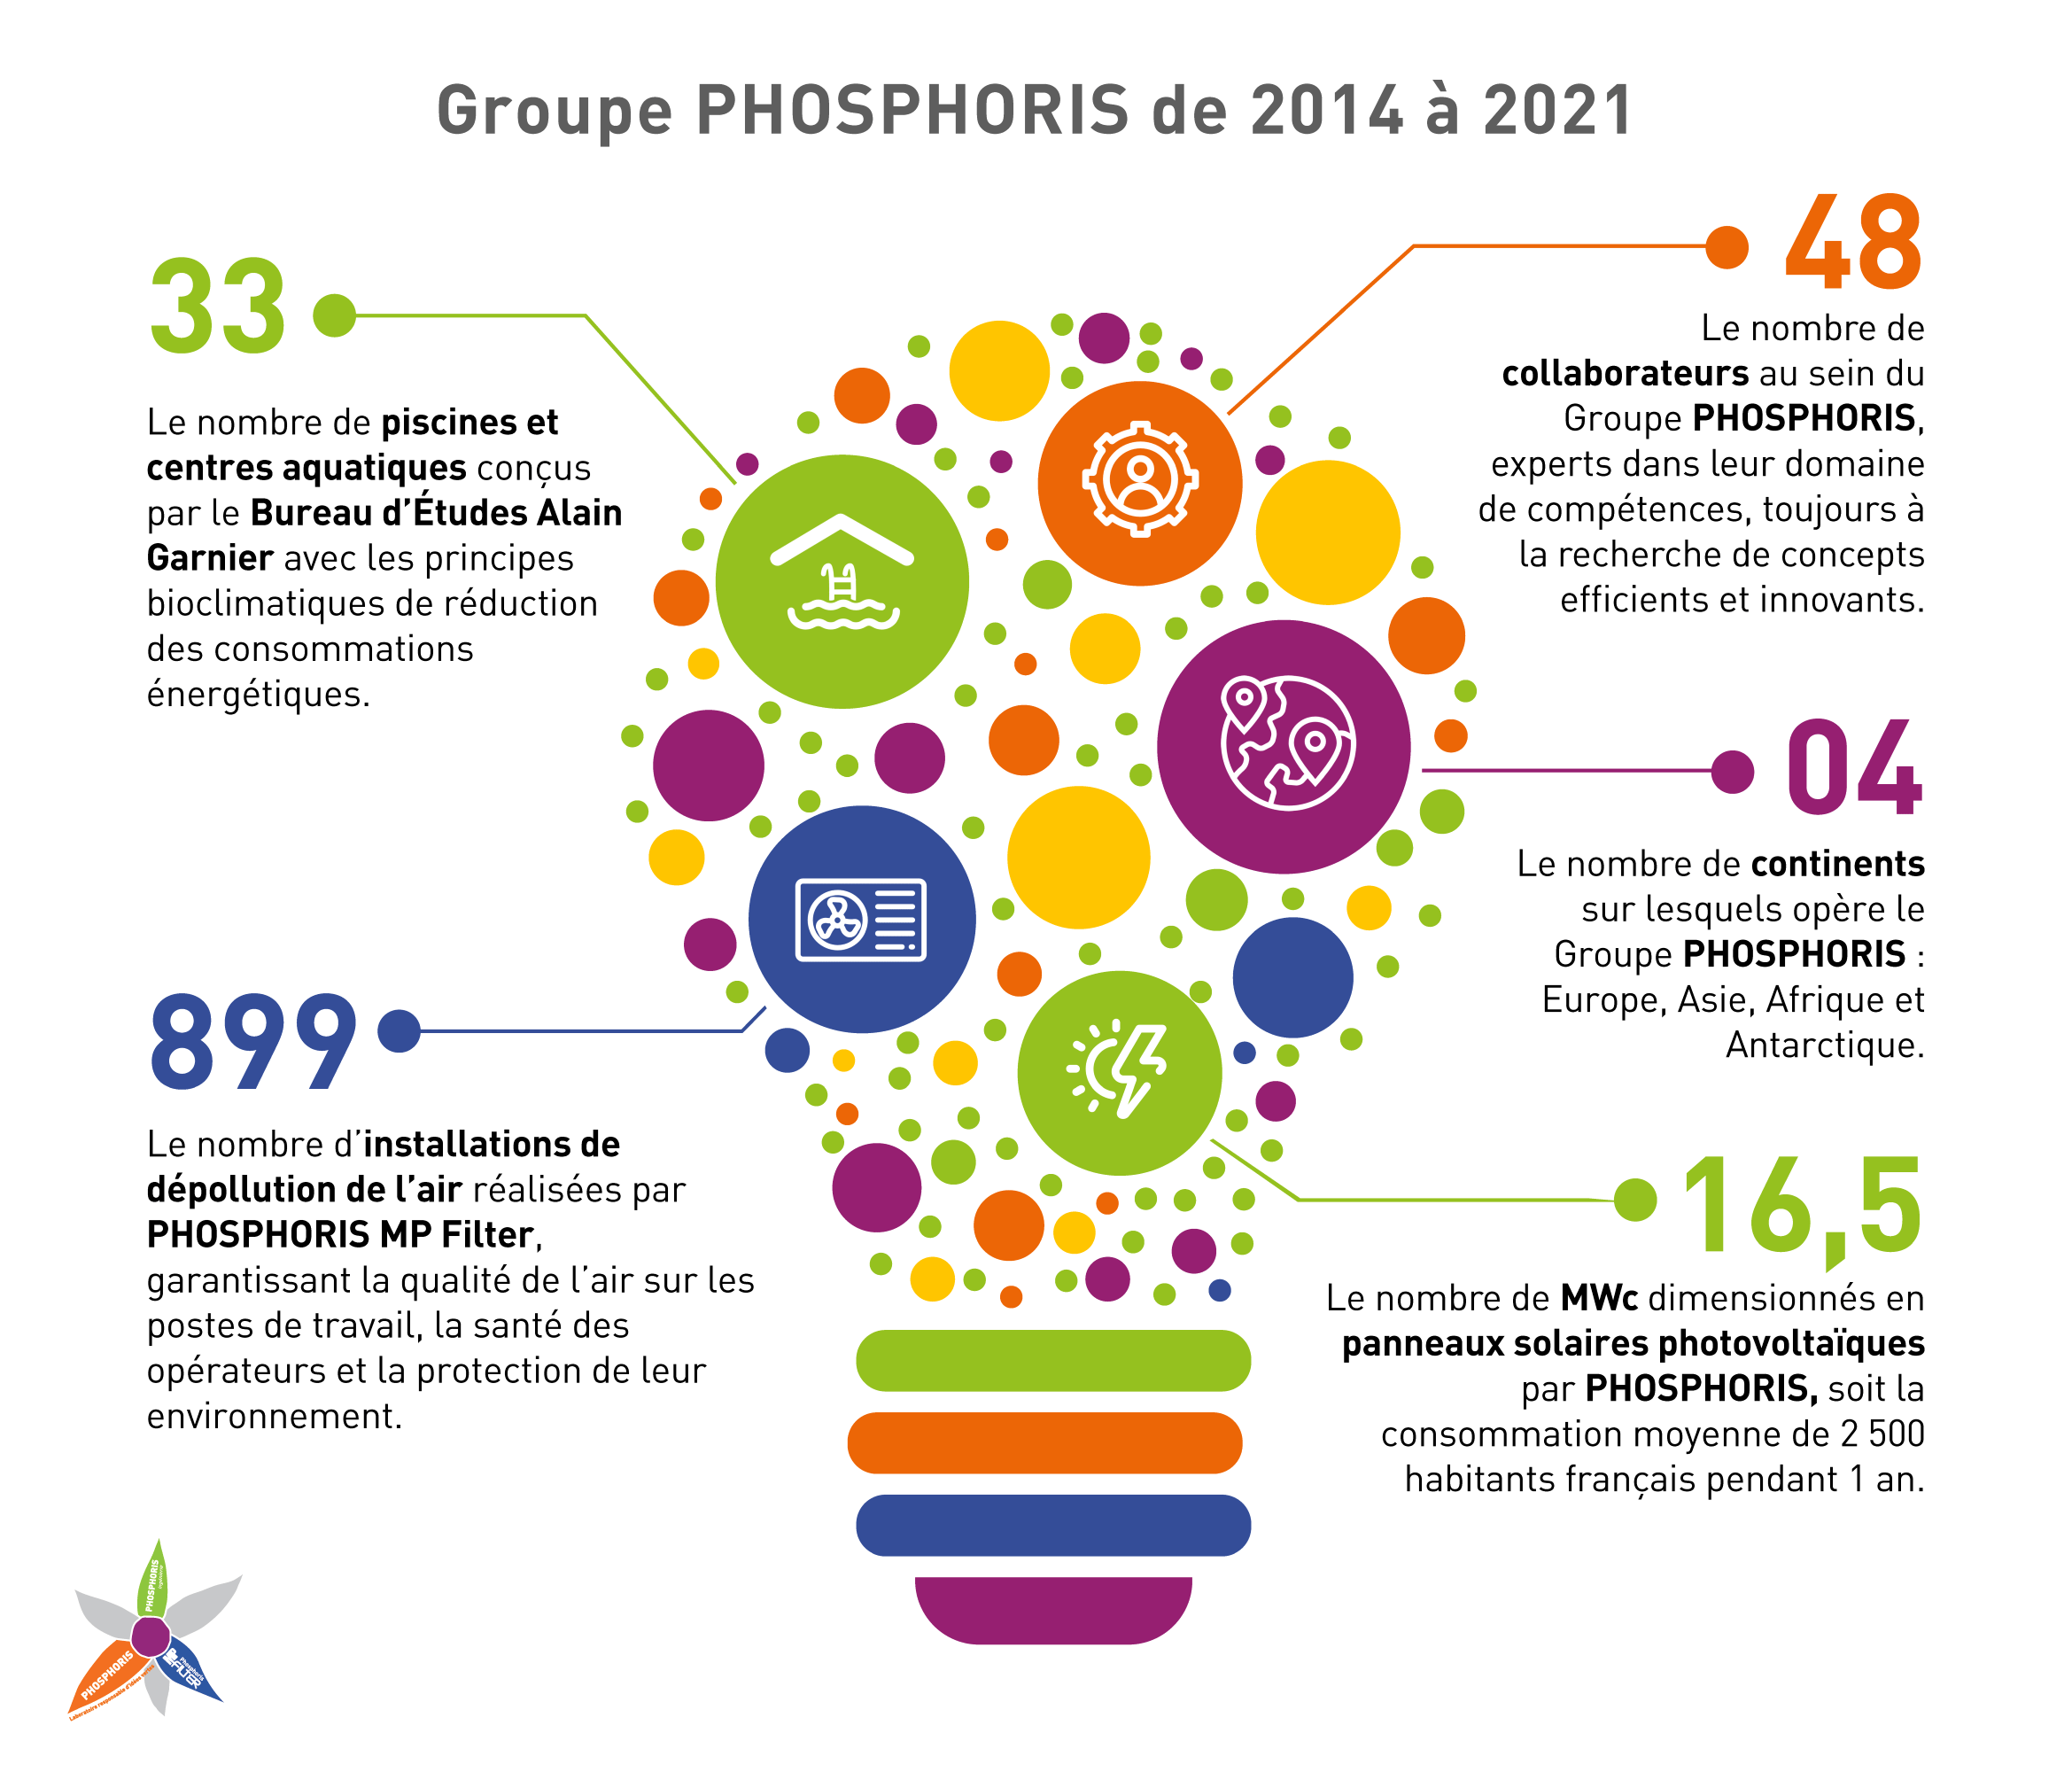 Chiffres clés du Groupe PHOSPHORIS en 2021